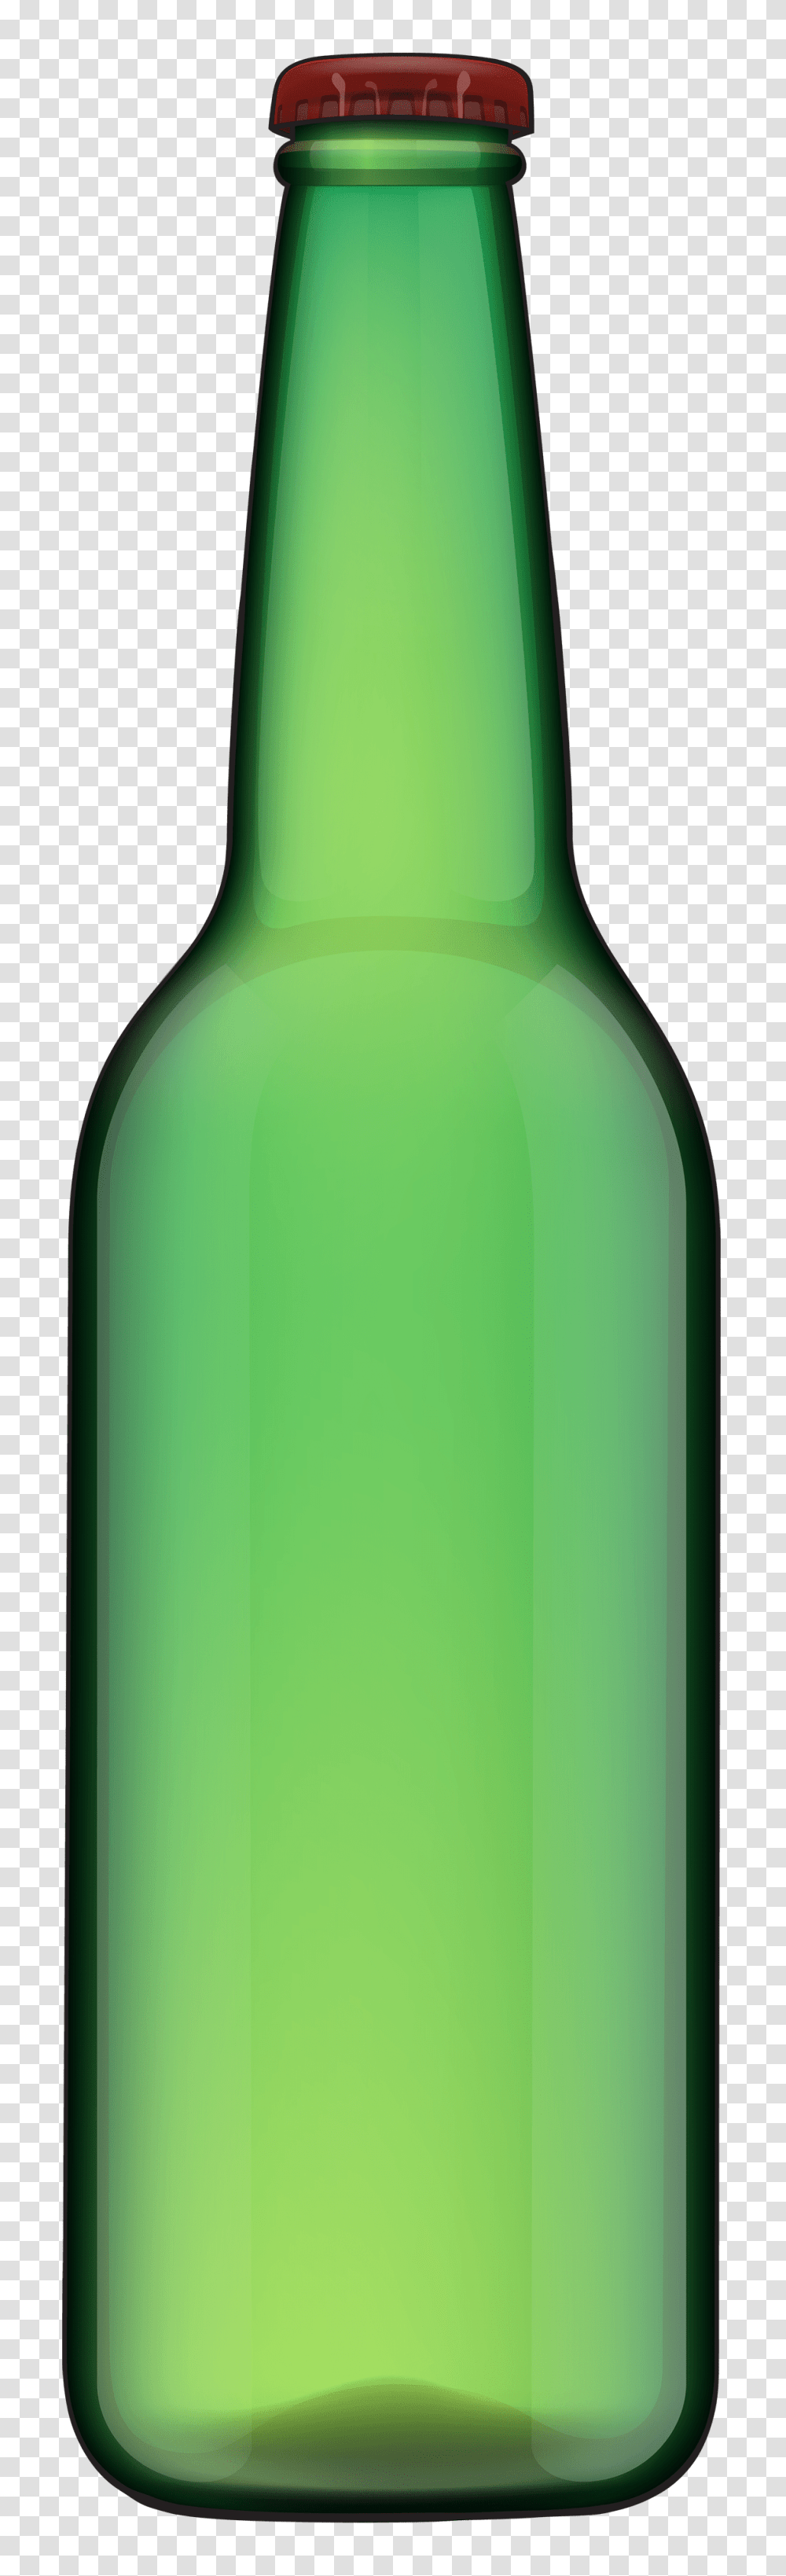 Green Beer Bottle Clipart Best Web Types Of Baby Bottles, Alcohol, Beverage, Drink, Wine Bottle Transparent Png